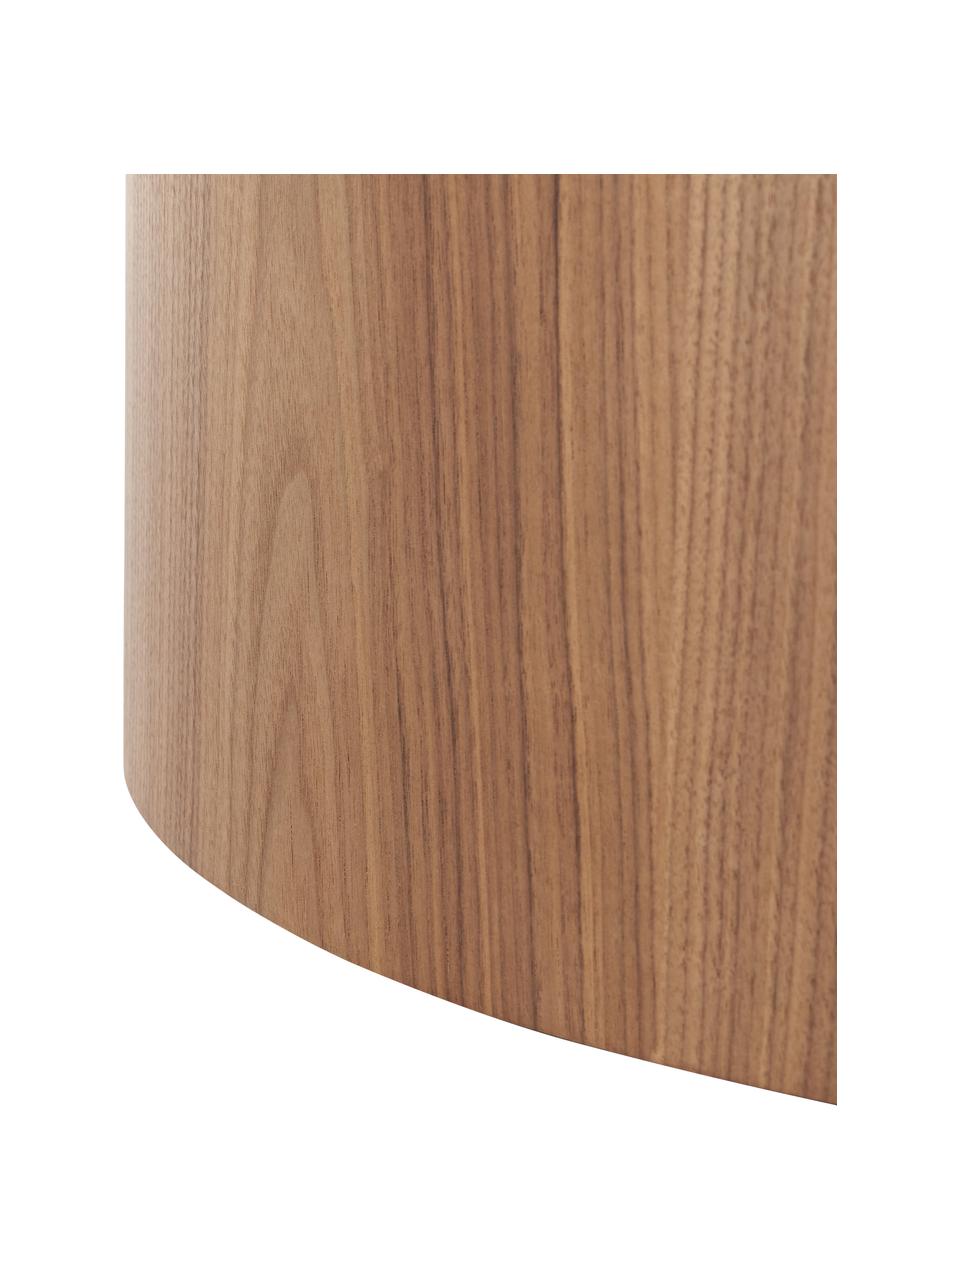 Kulatý dřevěný konferenční stolek Dan, MDF deska (dřevovláknitá deska střední hustoty) s dýhou z ořechu, Tmavé dřevo, Ø 80 cm, V 30 cm